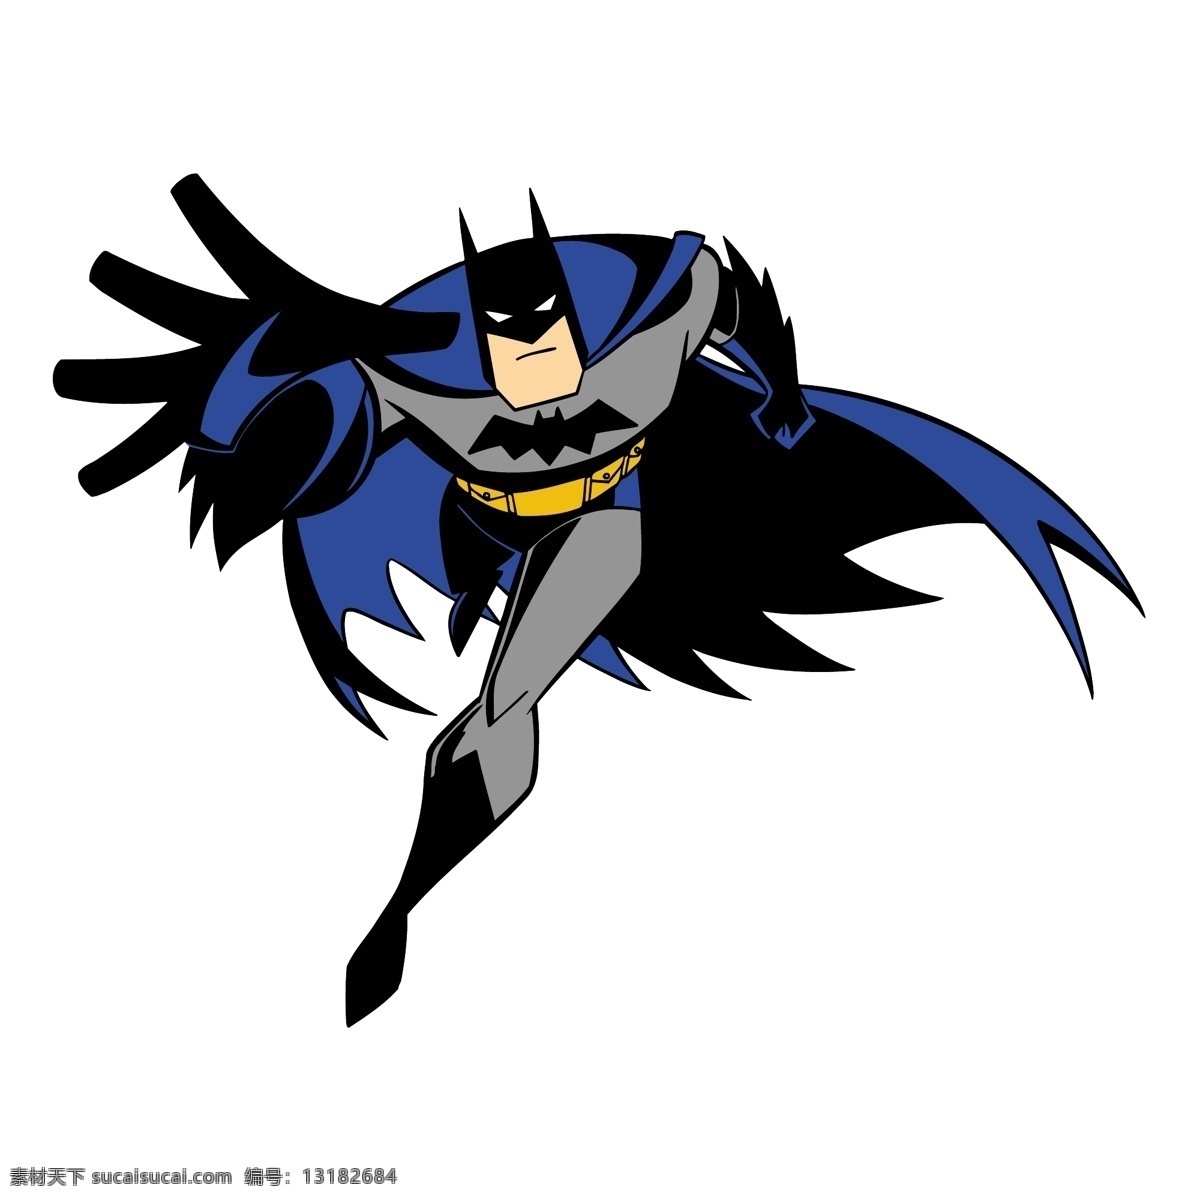 蝙蝠侠 卡通 矢量 其他矢量 矢量素材 矢量图库